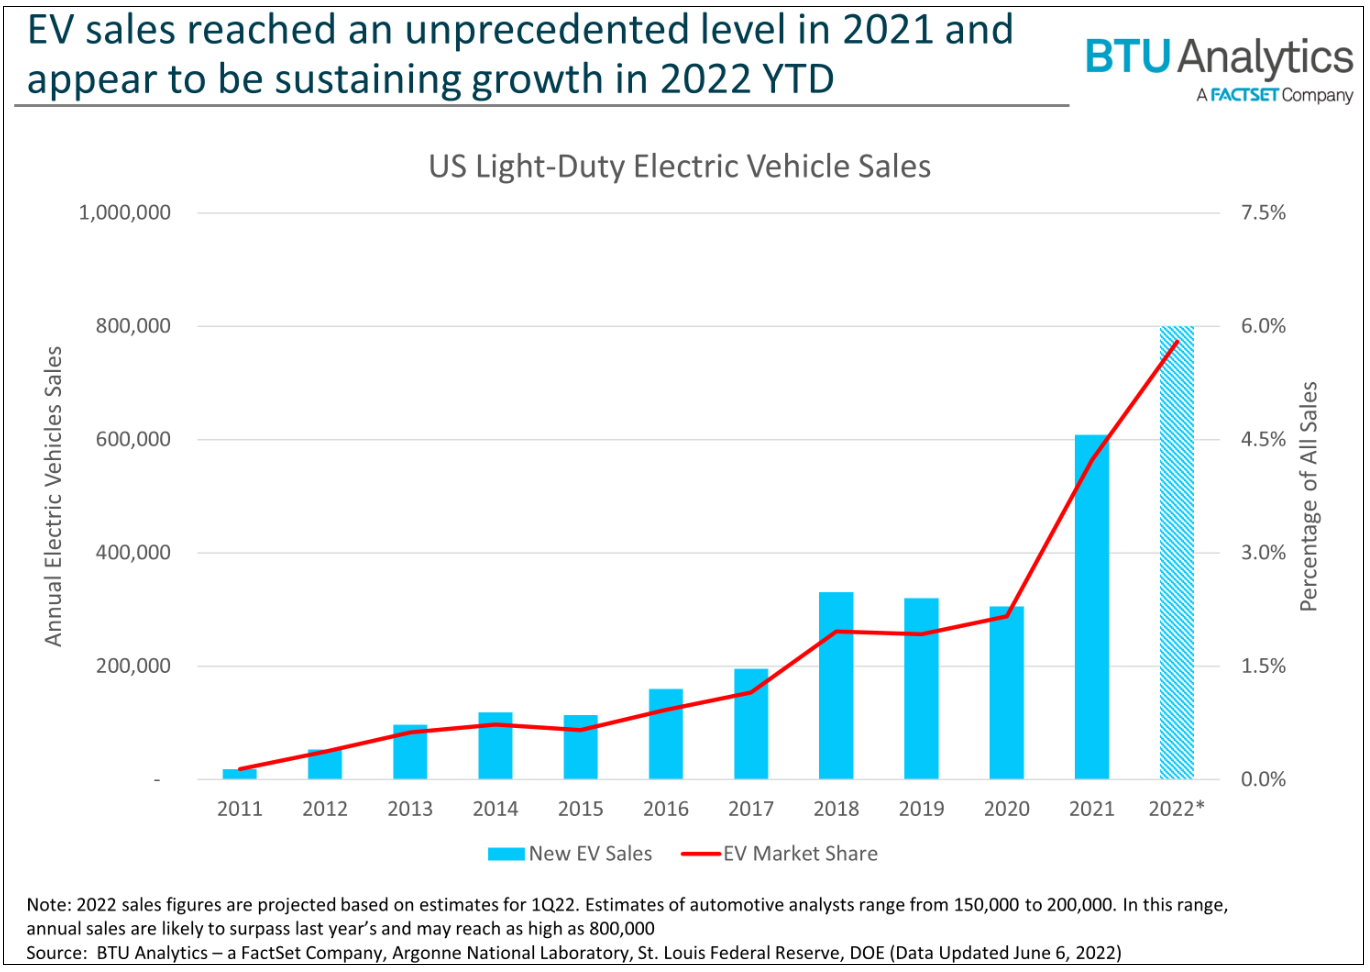 ev-sales-reached-an-unprecedented-level-in-2021-btu-analytics